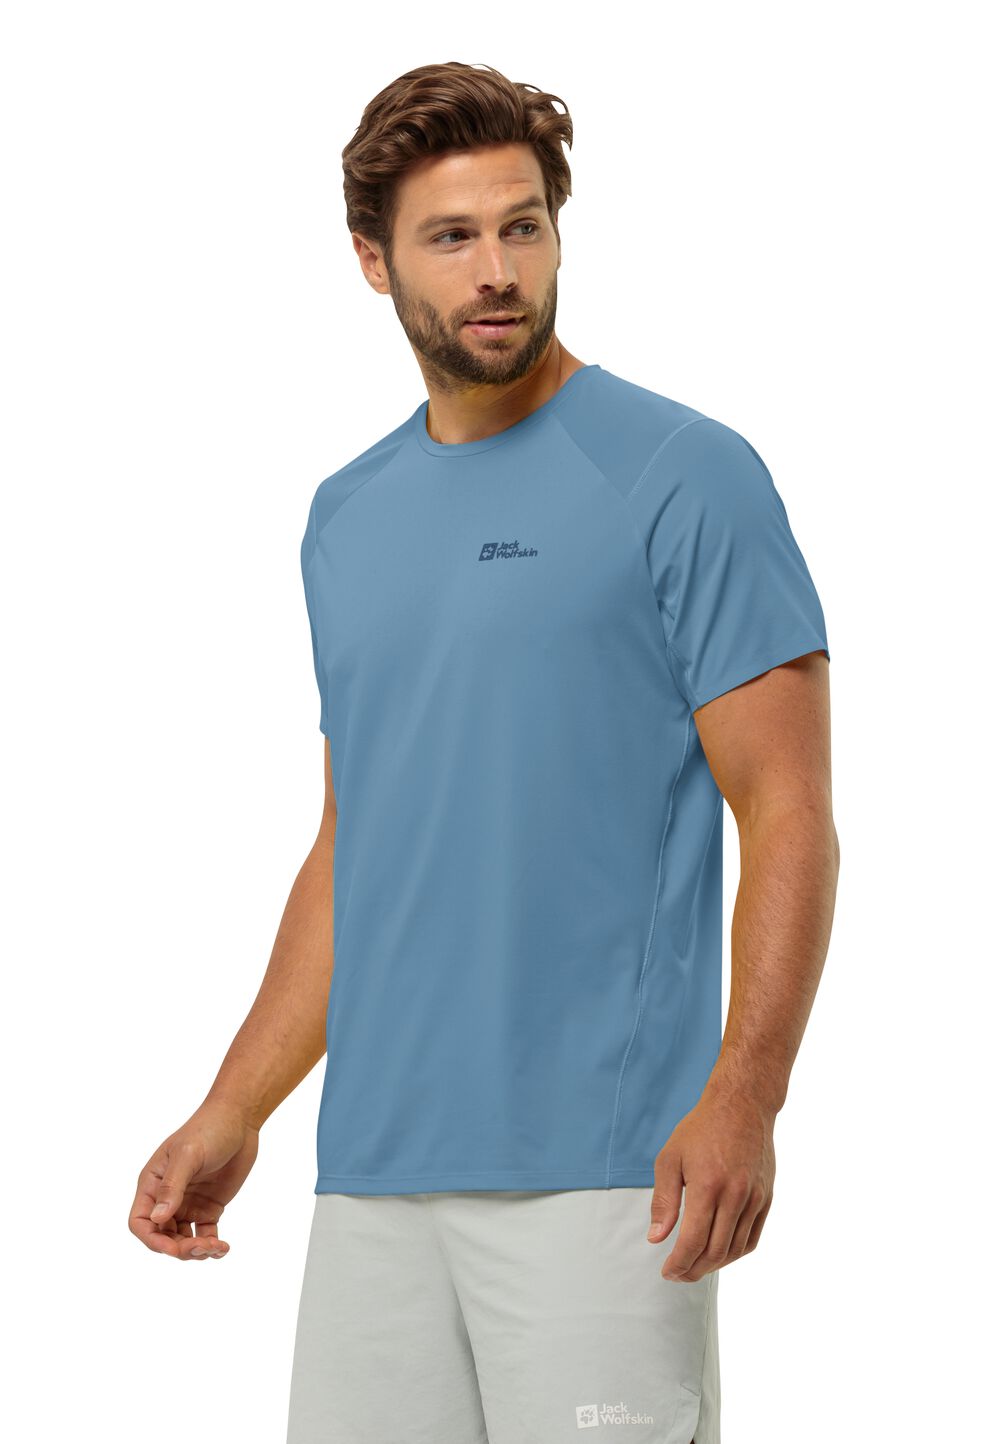 Jack Wolfskin Prelight Chill T-Shirt Men Functioneel shirt Heren XL elemental blue elemental blue